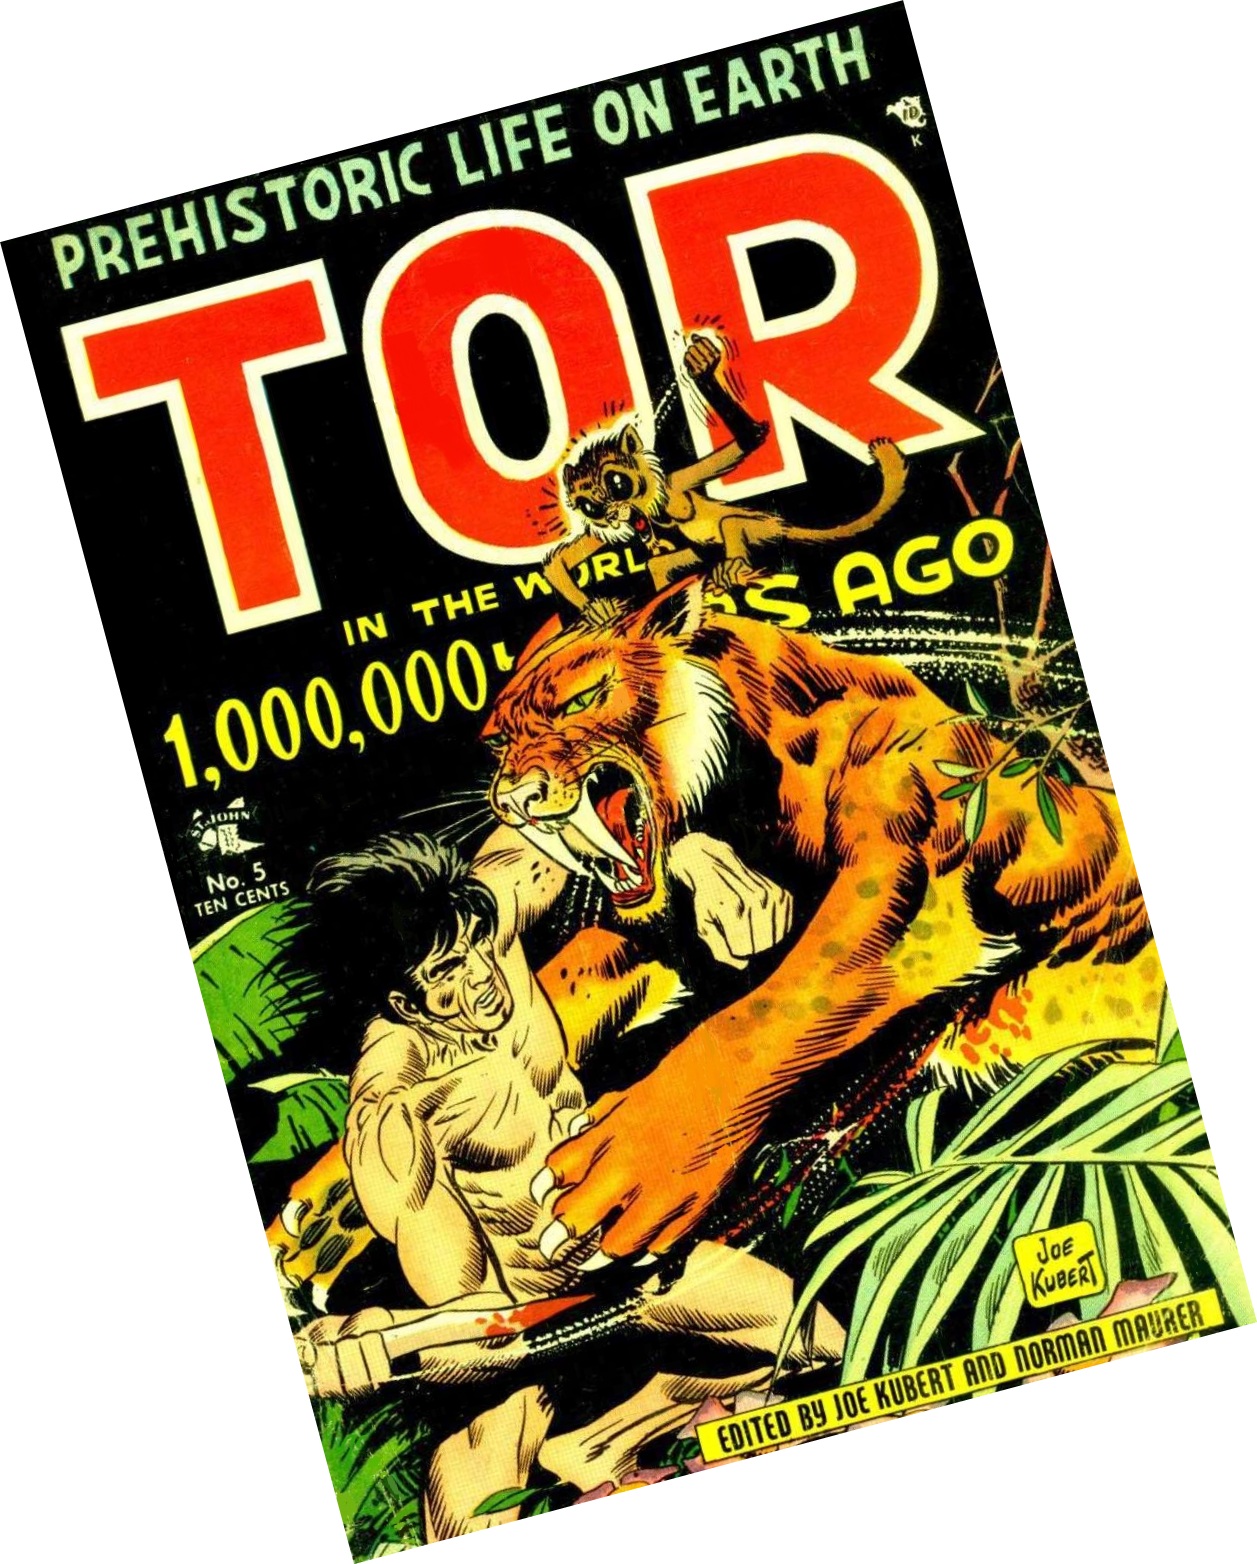 O grande desenhista de personagens como Tarzan e Gavião Negro, Joseph Kubert, gostava de conversar com os leitores nos anos 50